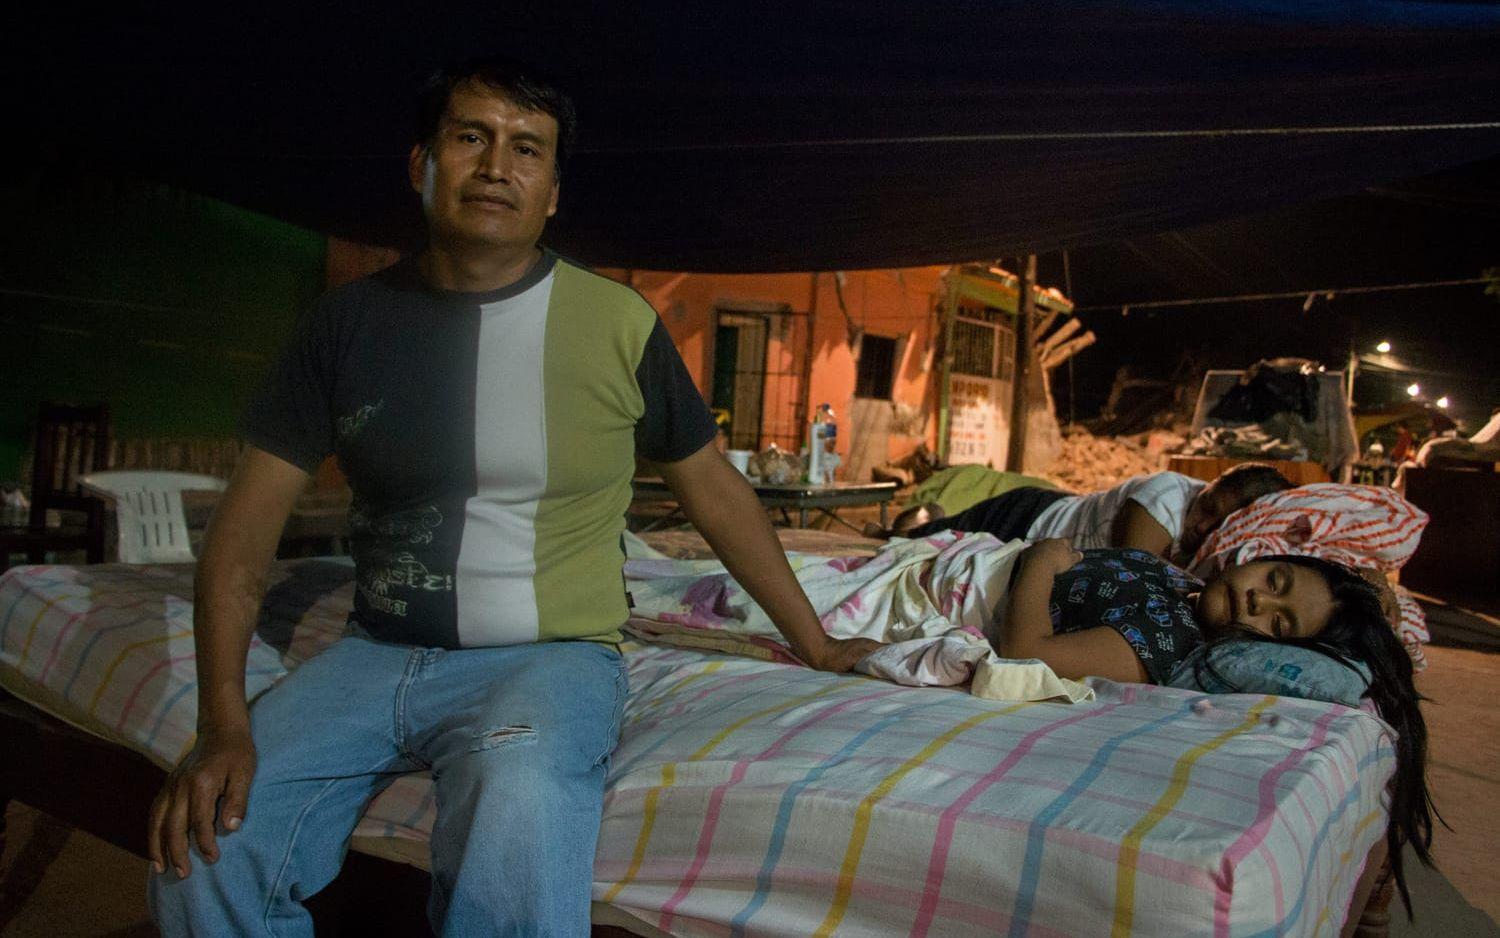 Pedro Arán bor ute på gatan. Dottern Erin Naomi ligger och sover bredvid en granne, i en säng som räddats ur ett av husen. Tillsammans med sin fru bakar och säljer Pedro bröd. Utan hjälp från myndigheterna är chanserna små att de ska lyckas bygga upp sitt hem från grunden igen. Foto: Åsa Welander